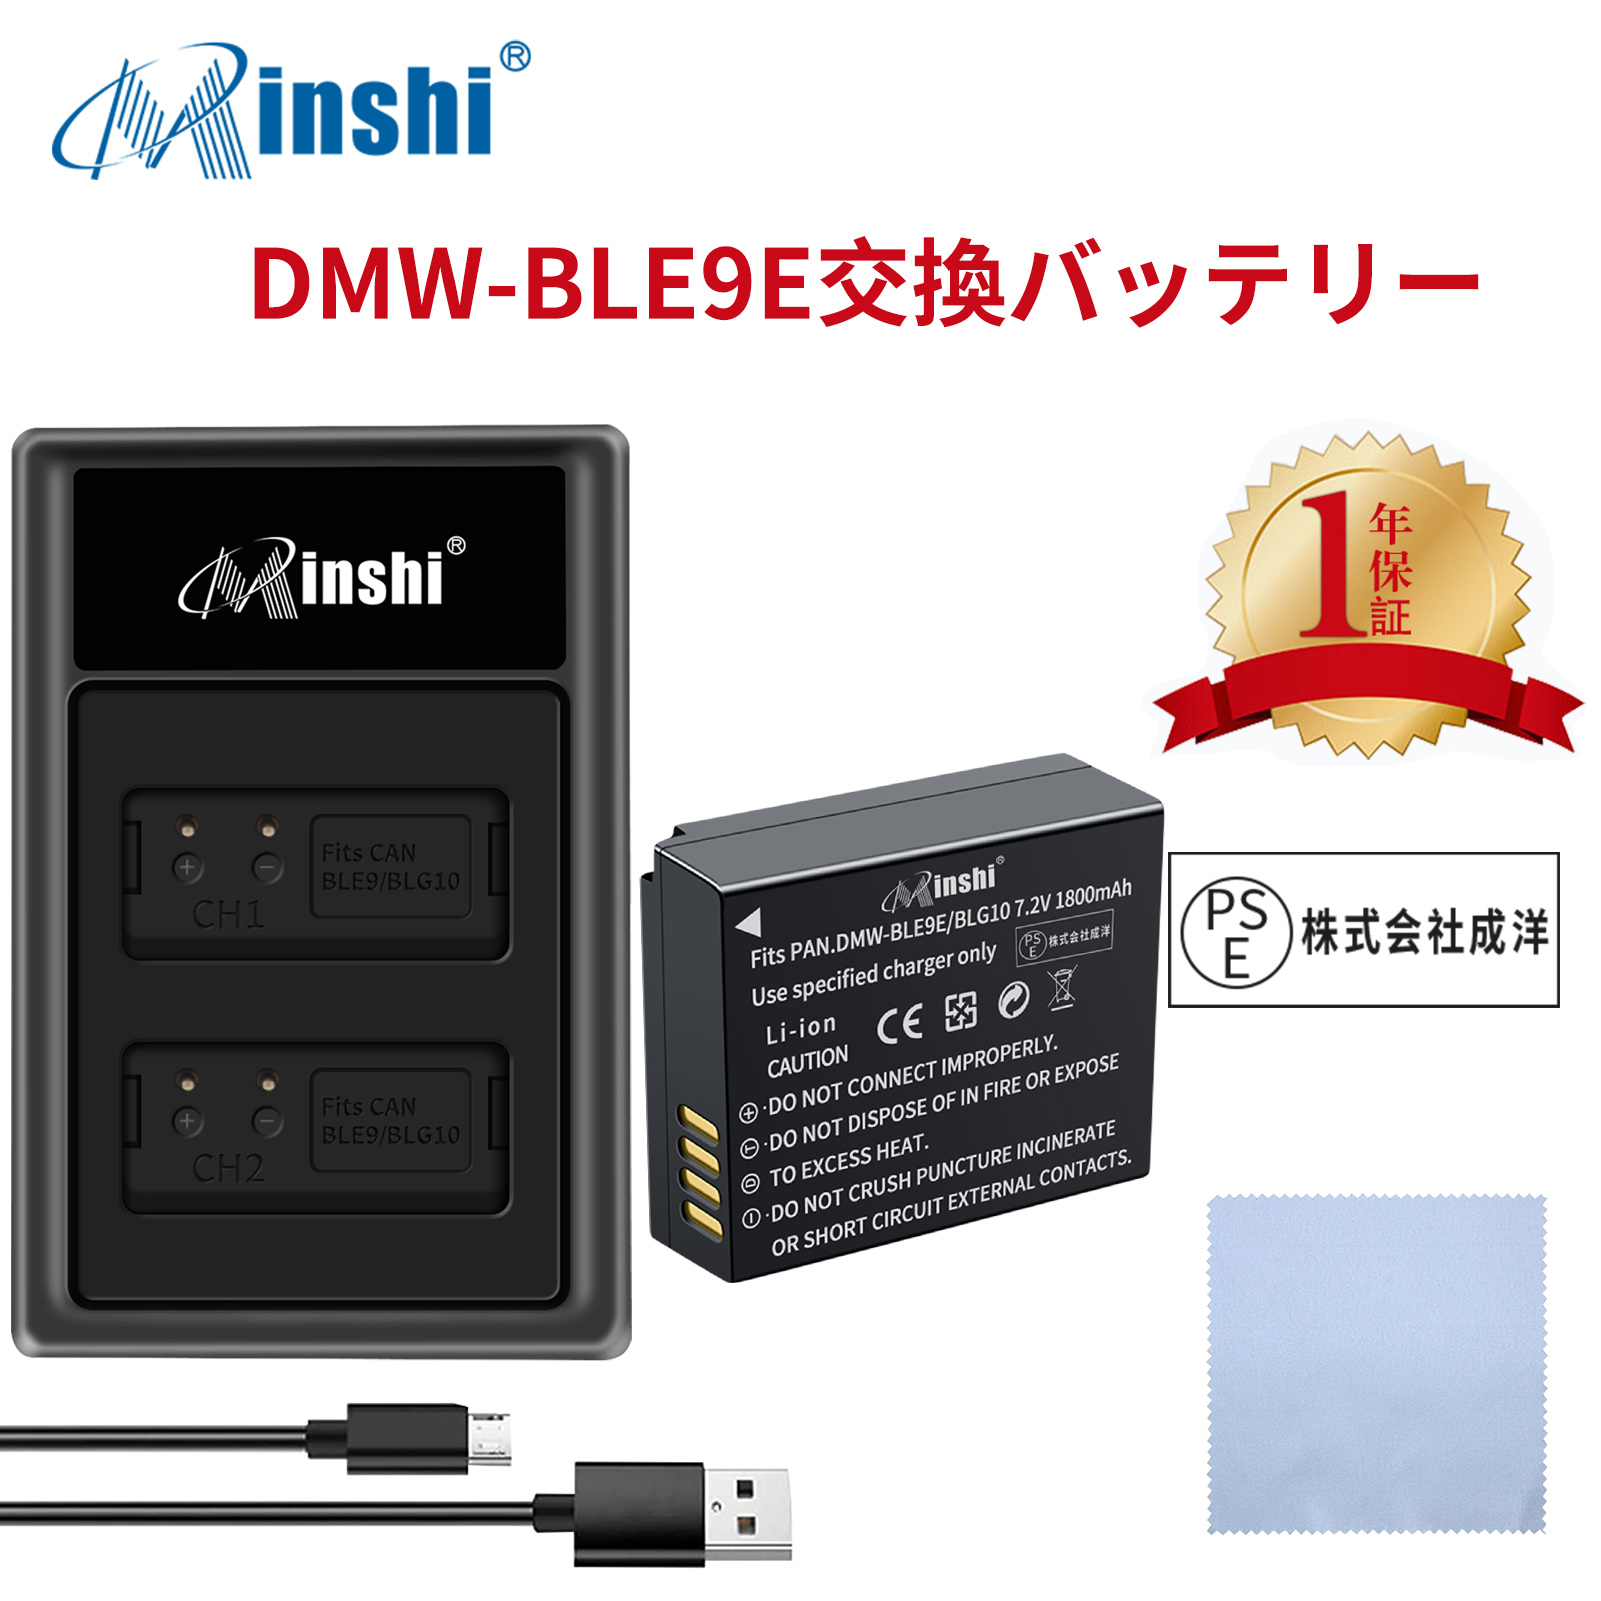 【セット】minshi Panasonic DMC-GF5 DMW-BLE9   【1800mAh 7.2V】PSE認定済 高品質 DMW-BLG10 交換用バッテリー